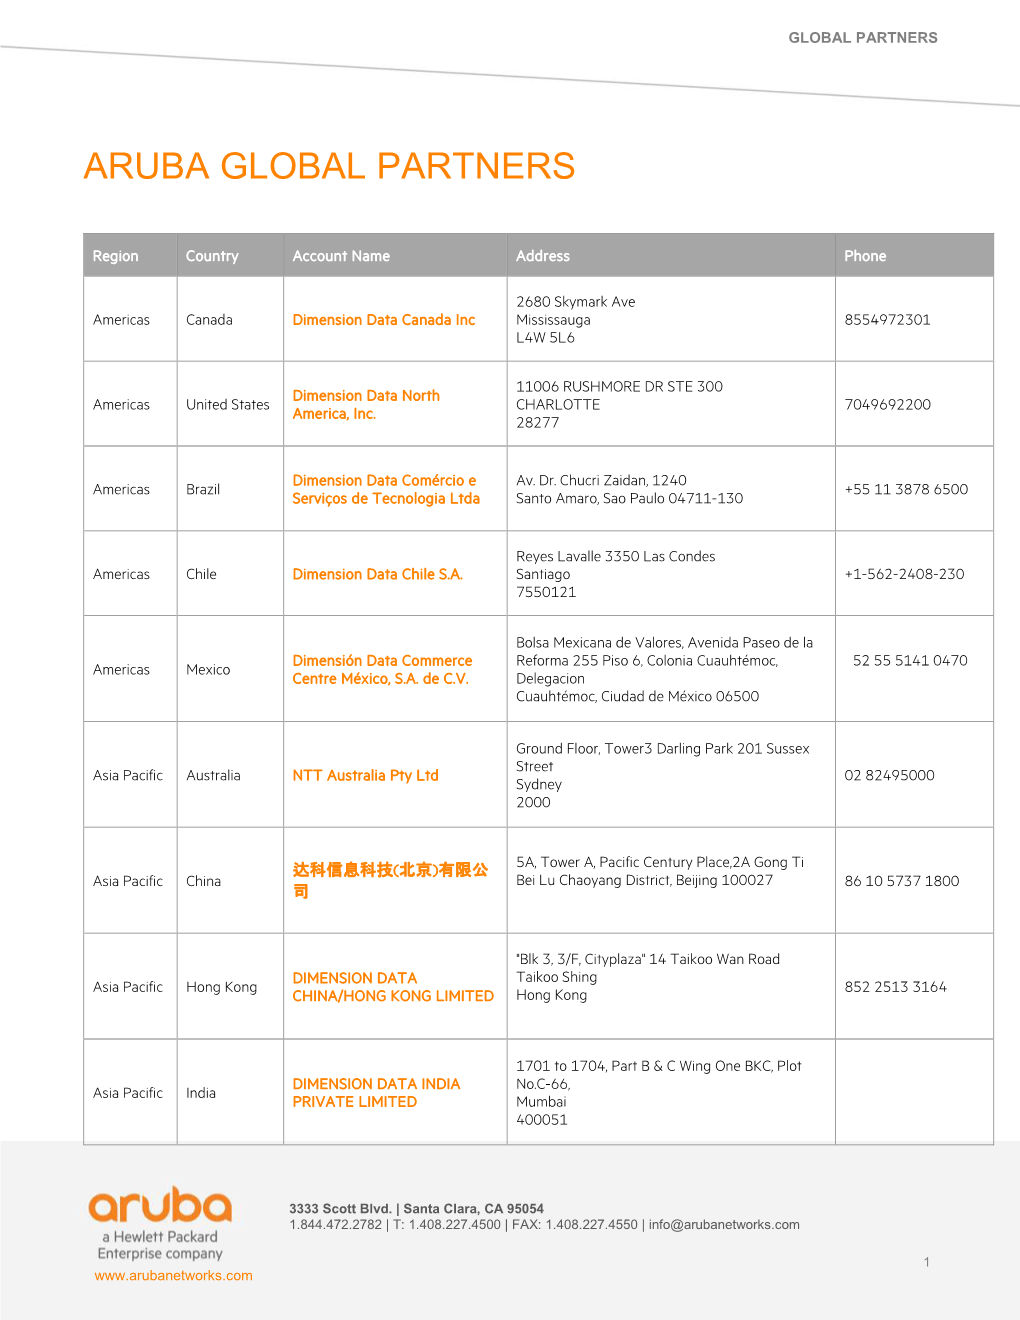 Aruba Global Partners